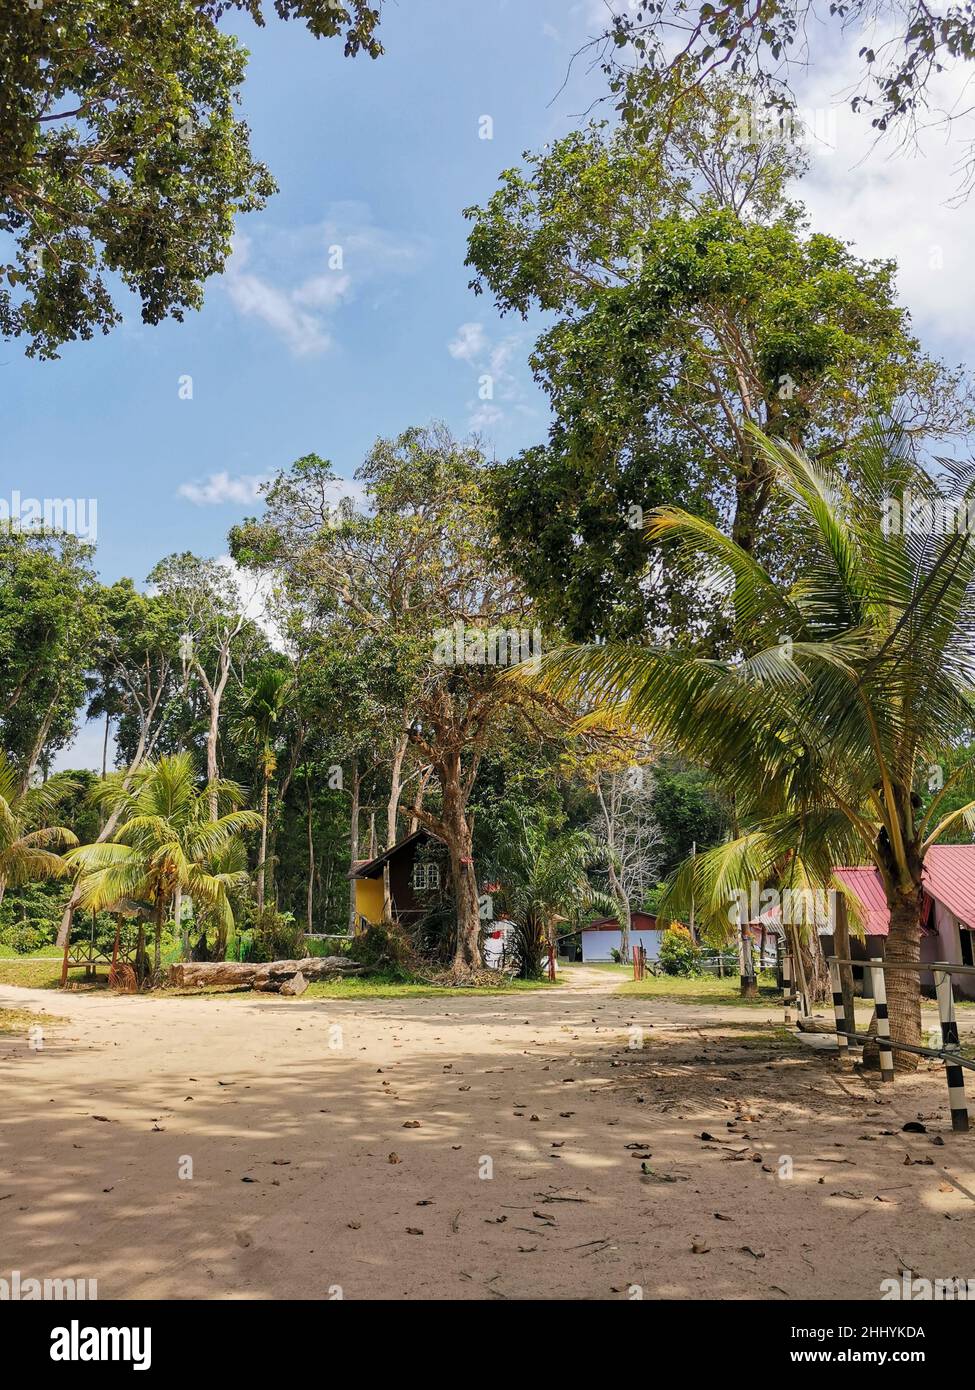 Casa rurale nel mezzo di alberi di foresta al giorno d'estate. Splendida vista sulla campagna nel quartiere rurale tropicale. Endau, Malesia Foto Stock